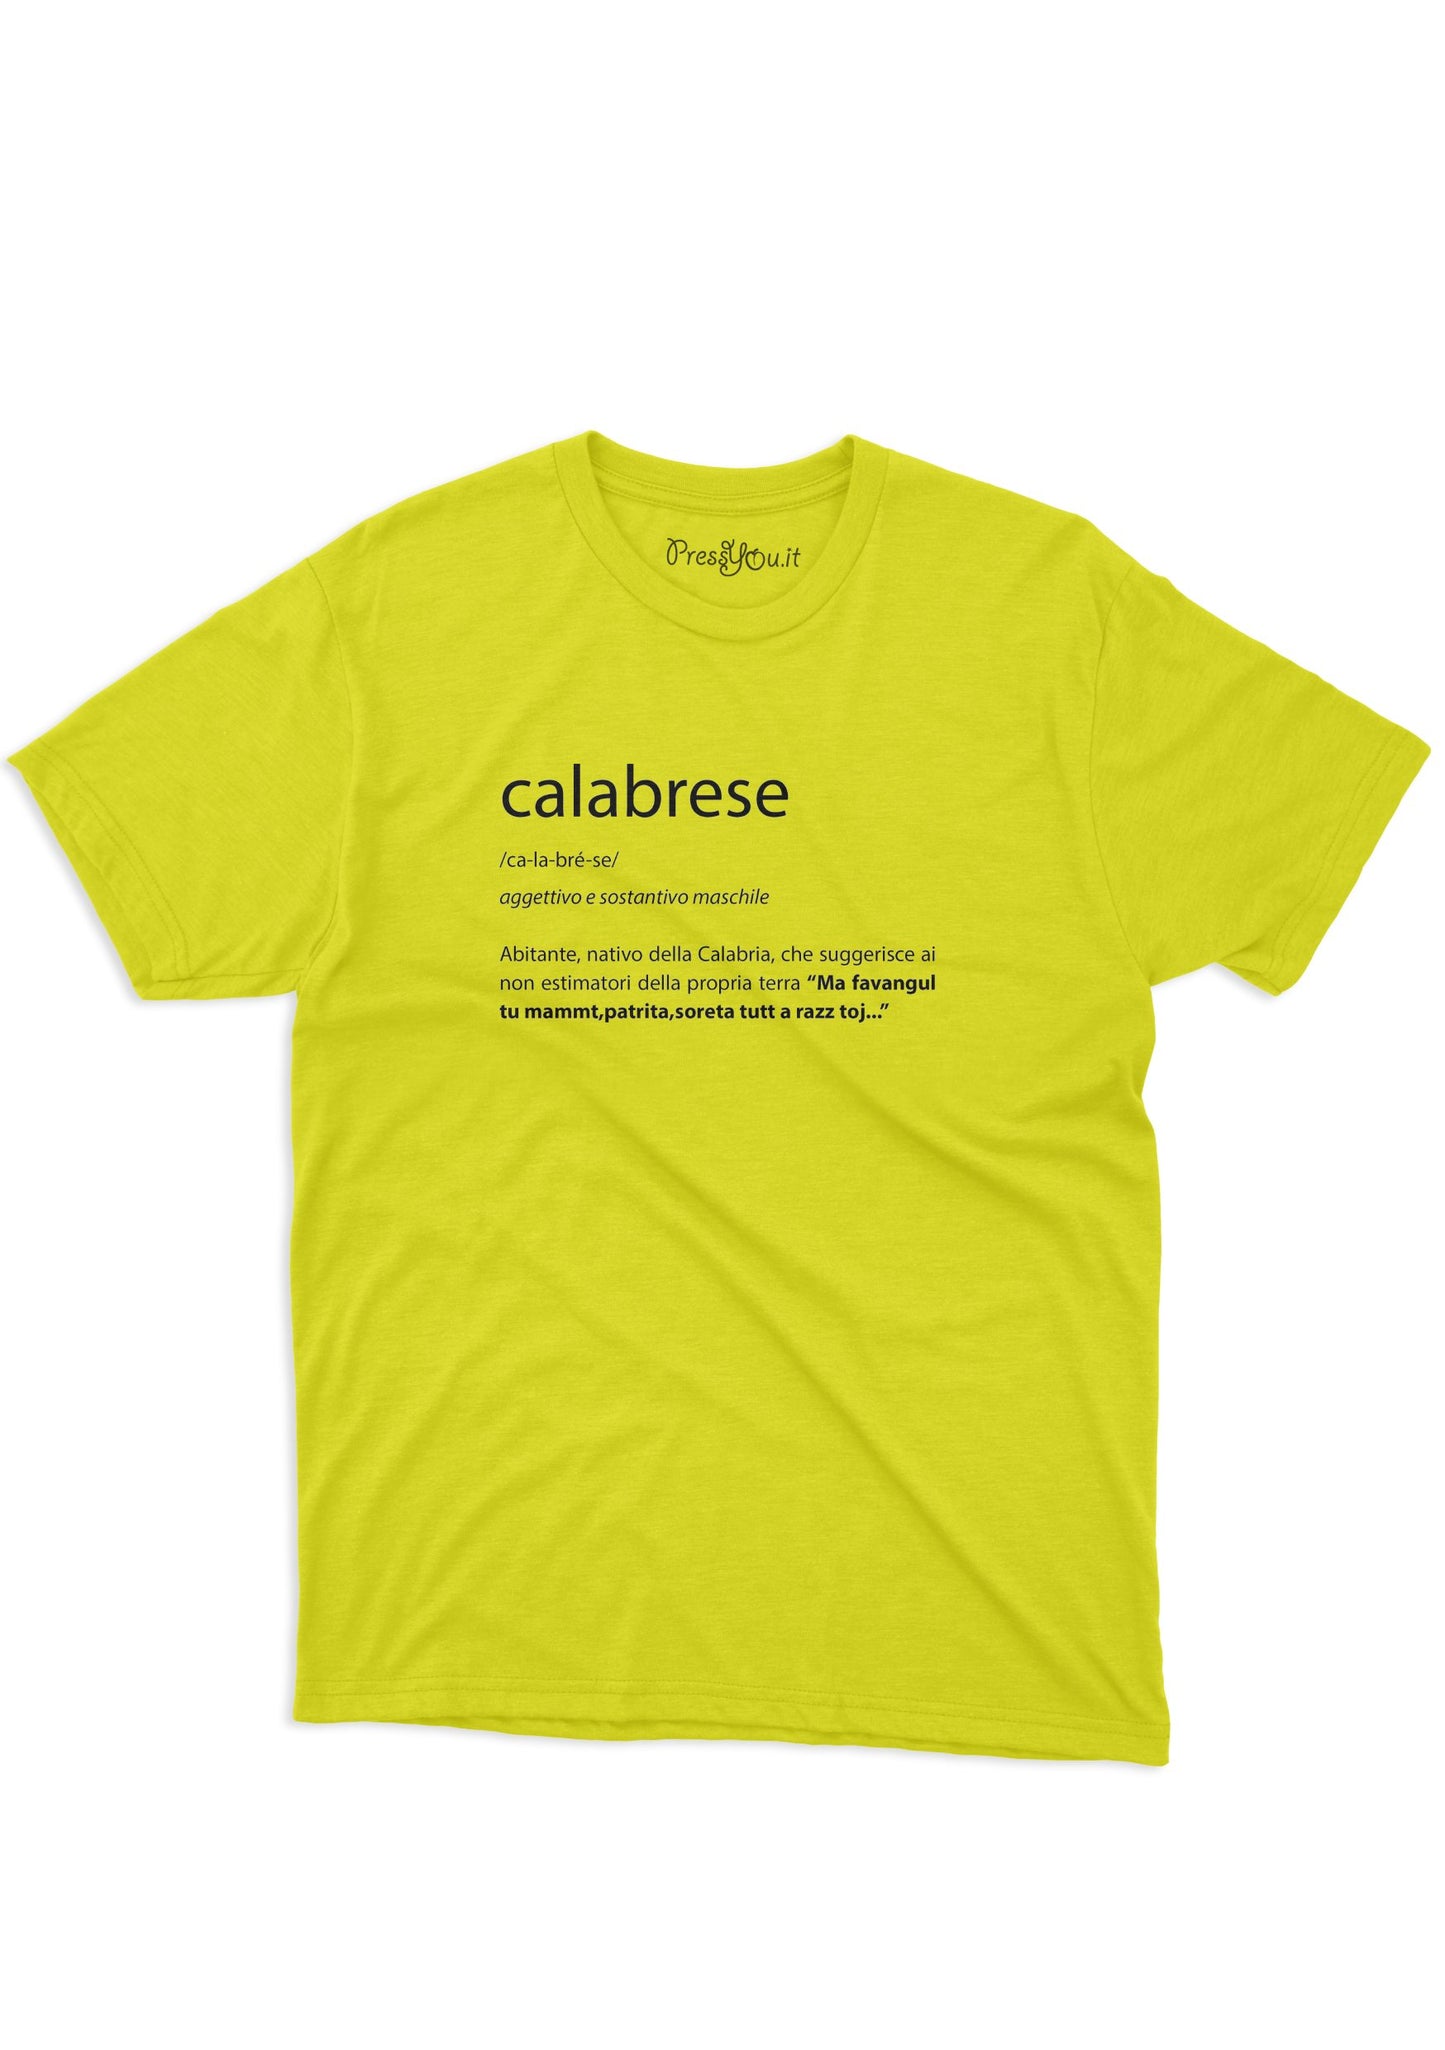 Calabrian dictionary t-shirt native inhabitant of Calabria